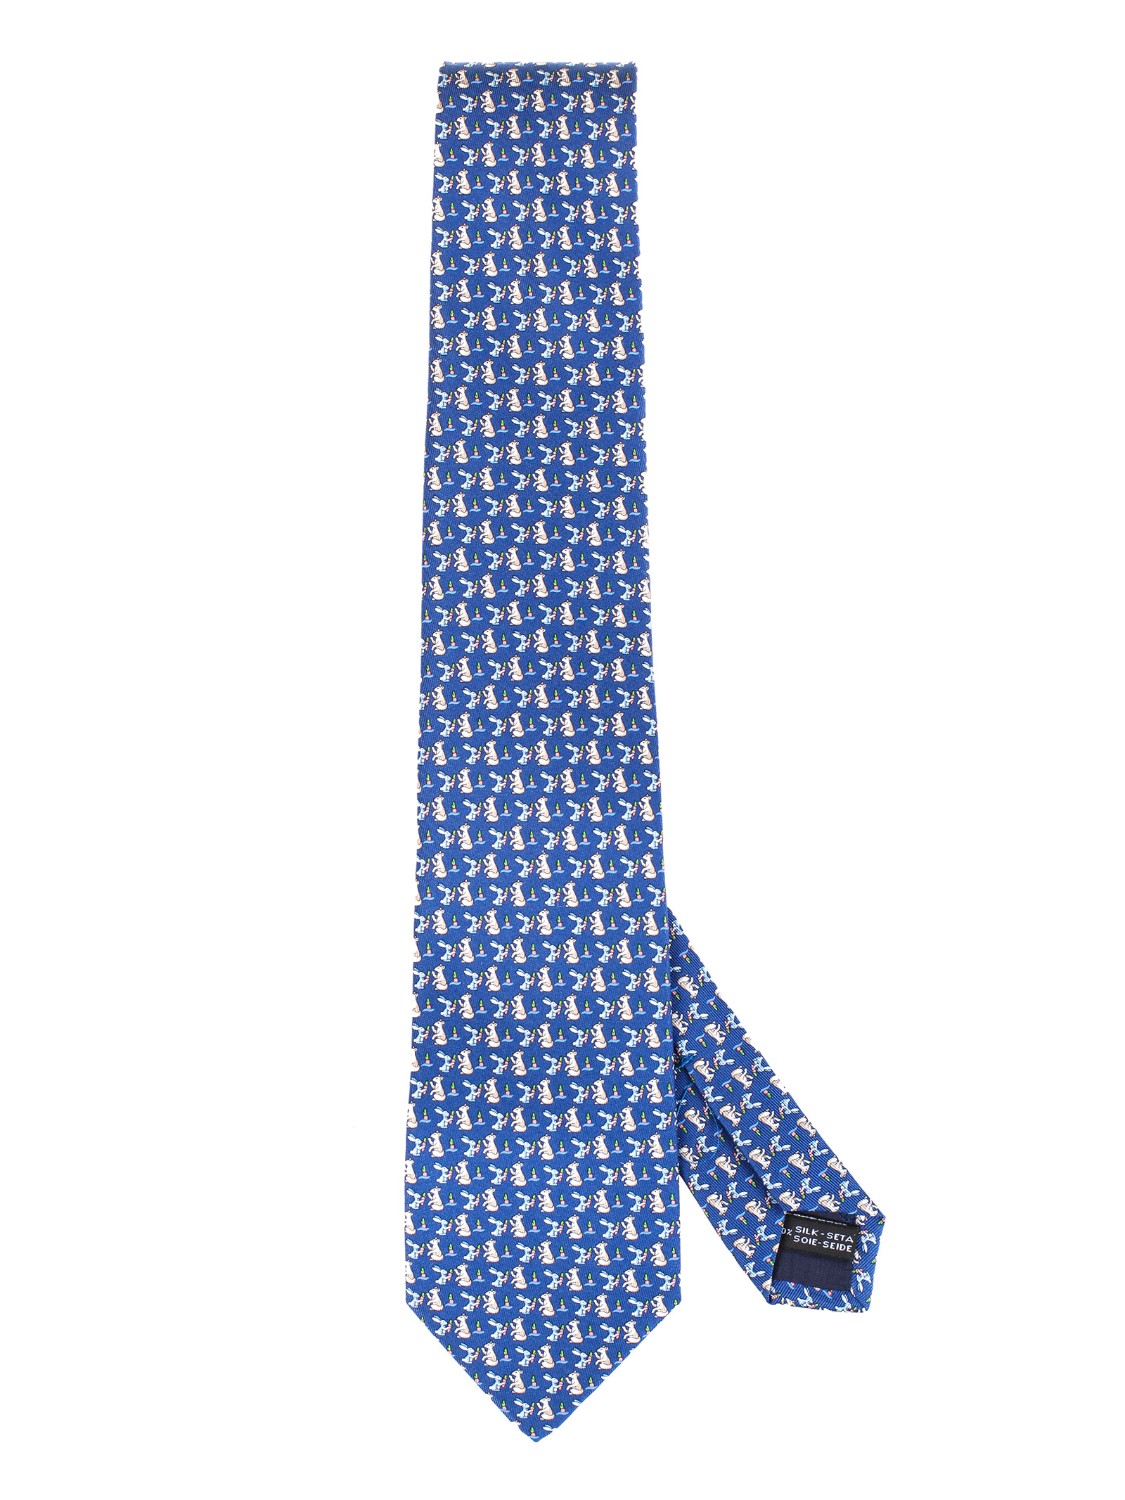 shop SALVATORE FERRAGAMO  Cravatta: Salvatore Ferragamo cravatta in seta con stampa conigli.
Composizione: 100% seta.
Made in Italy.. 357725 CR 4 FELICE-002 number 1181903